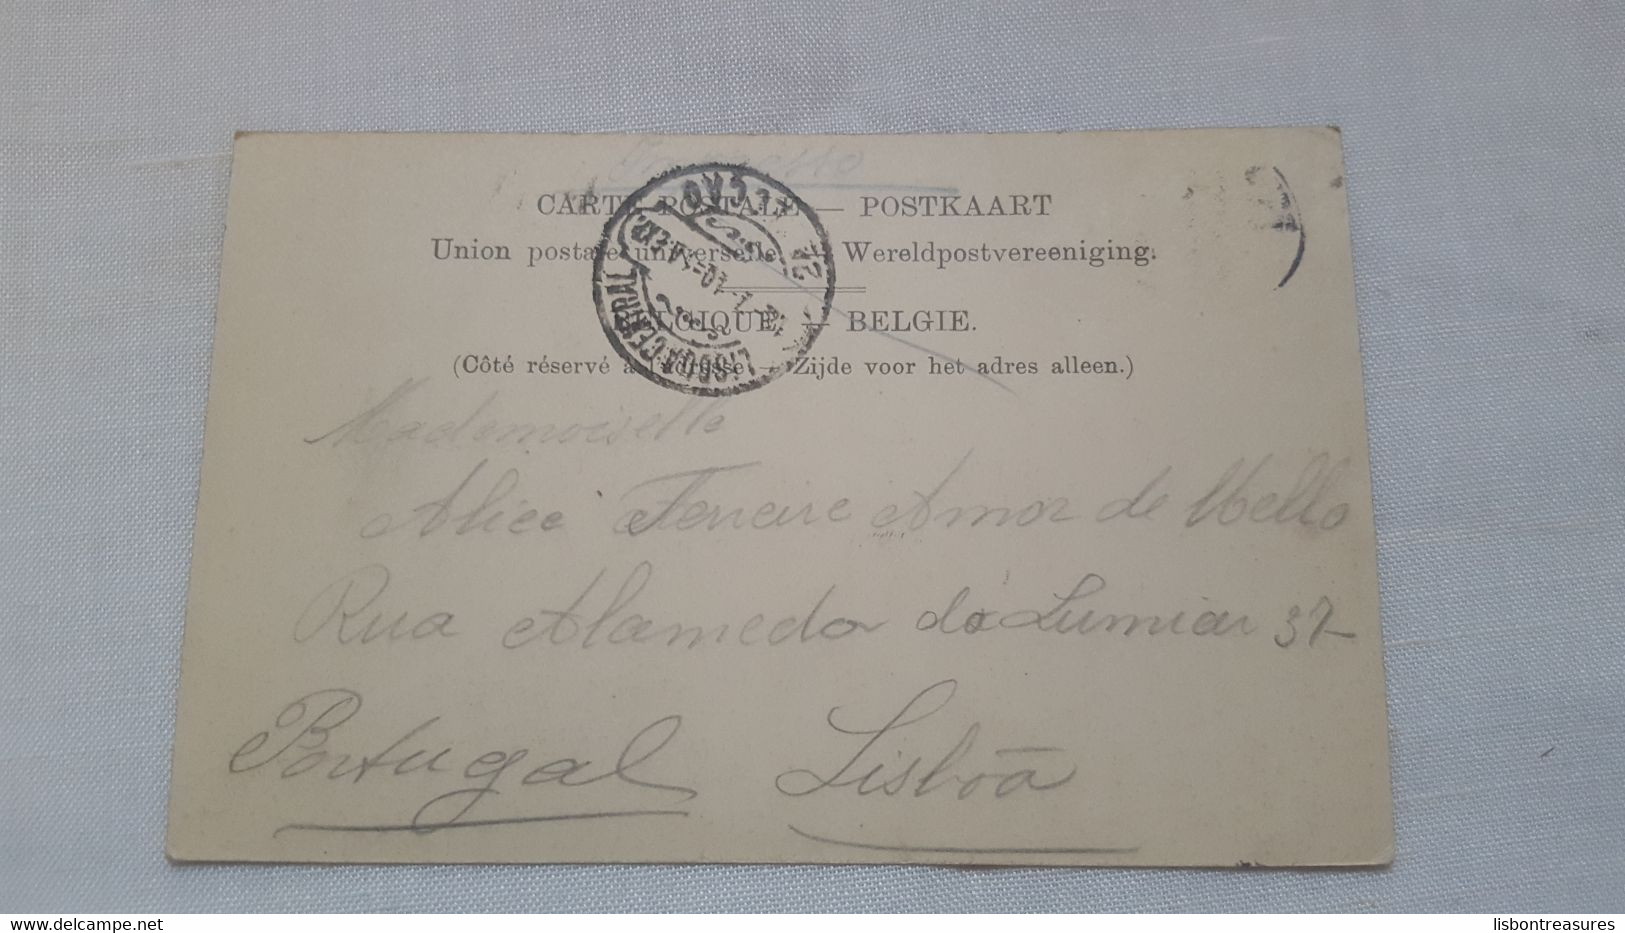 ANTIQUE POSTCARD BELGIUM DOLHAIN - LE PONT DE HERCULE ET LE MARCHE USED 1905 - Limbourg